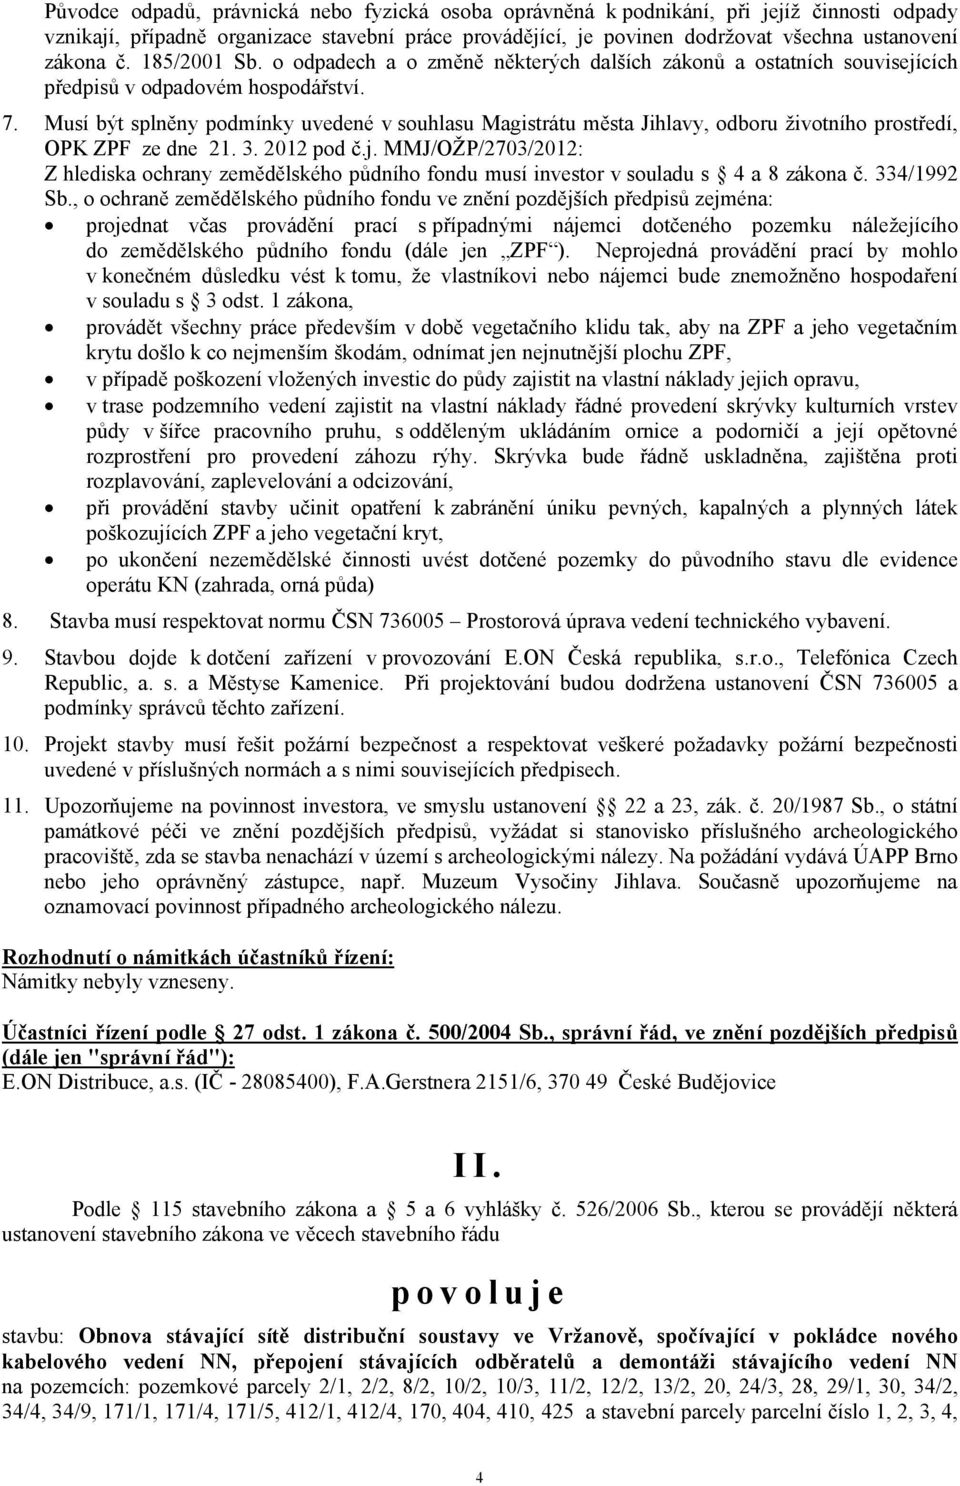 Musí být splněny podmínky uvedené v souhlasu Magistrátu města Jihlavy, odboru životního prostředí, OPK ZPF ze dne 21. 3. 2012 pod č.j.